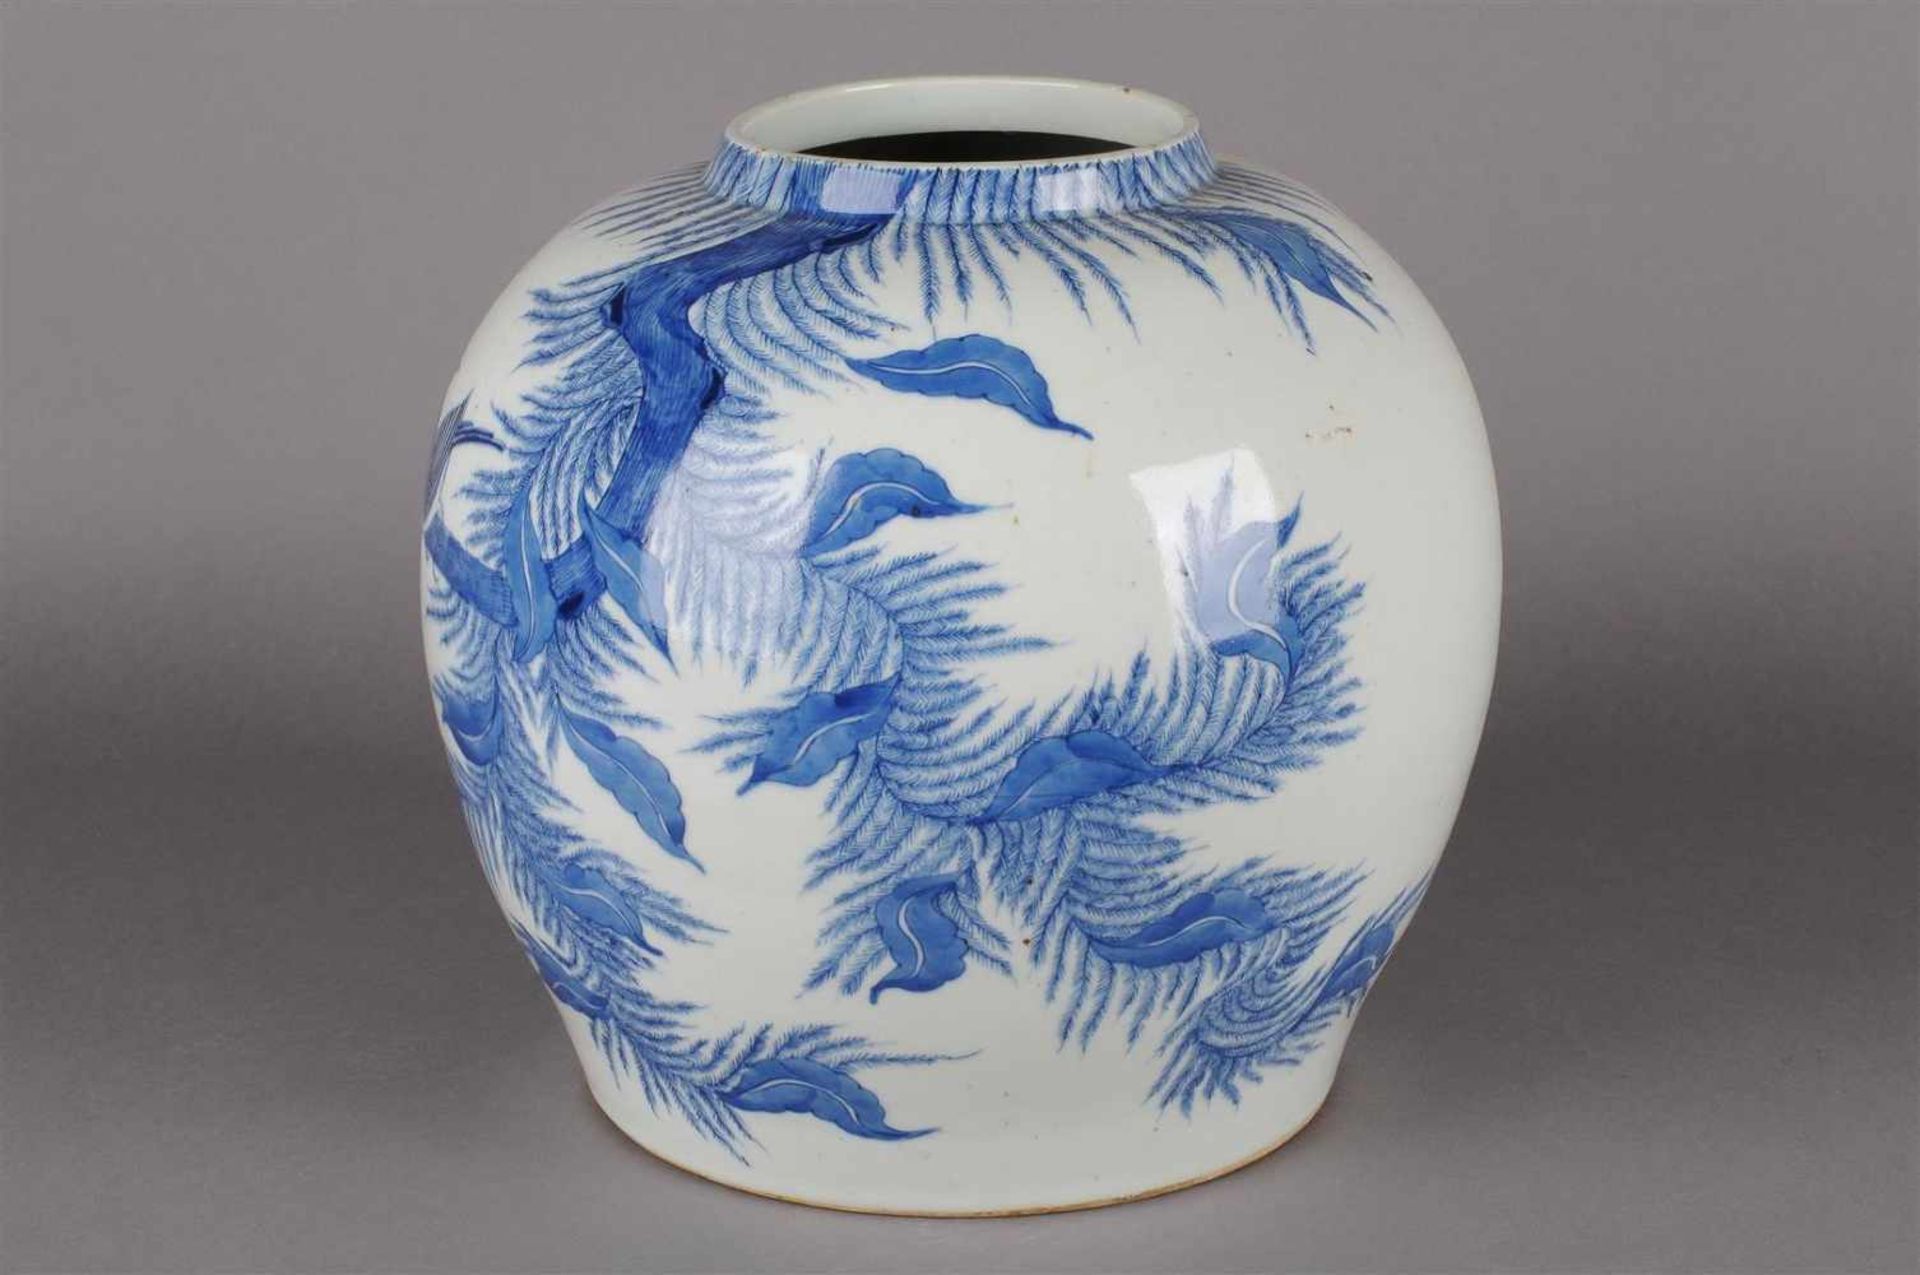 Blauw wit porseleinen vaas met decor van bloemen en vogels, niet gemerkt, China 20e eeuw. H: 25 cm. - Bild 6 aus 6